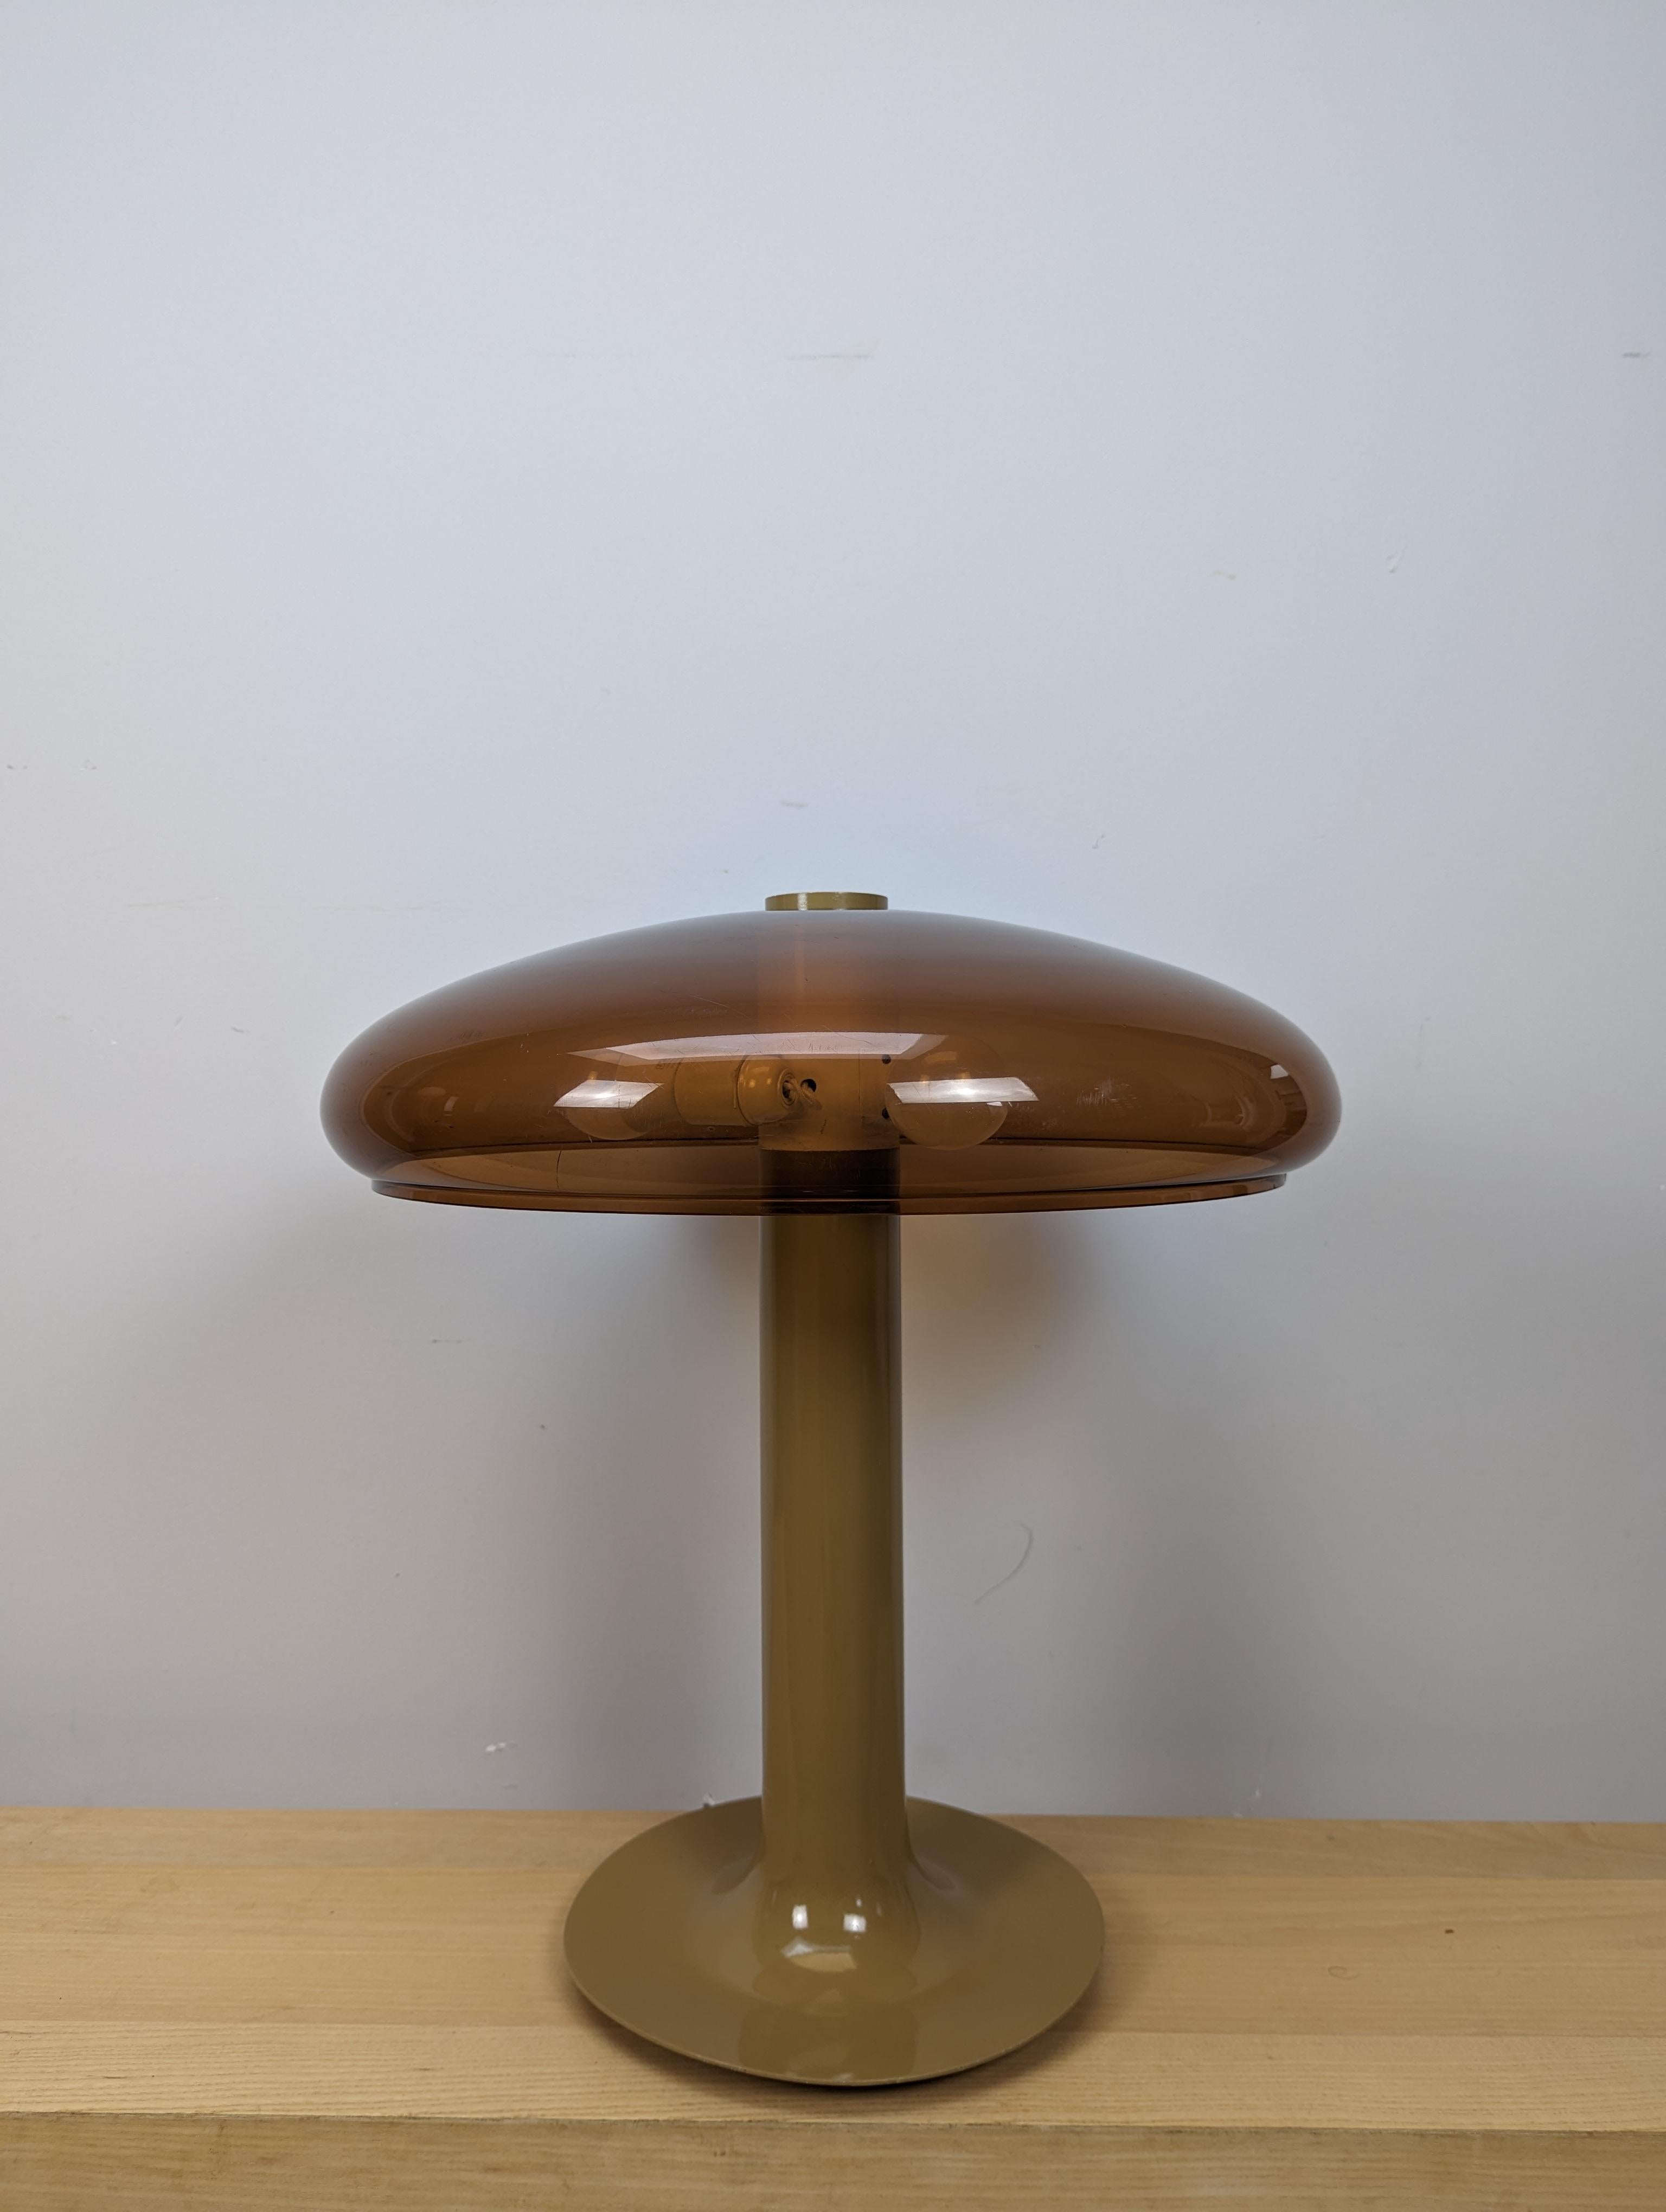 Spectaculaire lampe de table du milieu du siècle en forme de champignon

Les photos ne rendent pas justice à cette lampe qui a de la présence en raison de sa taille.

La lampe est en très bon état pour son âge avec seulement de petites marques liées